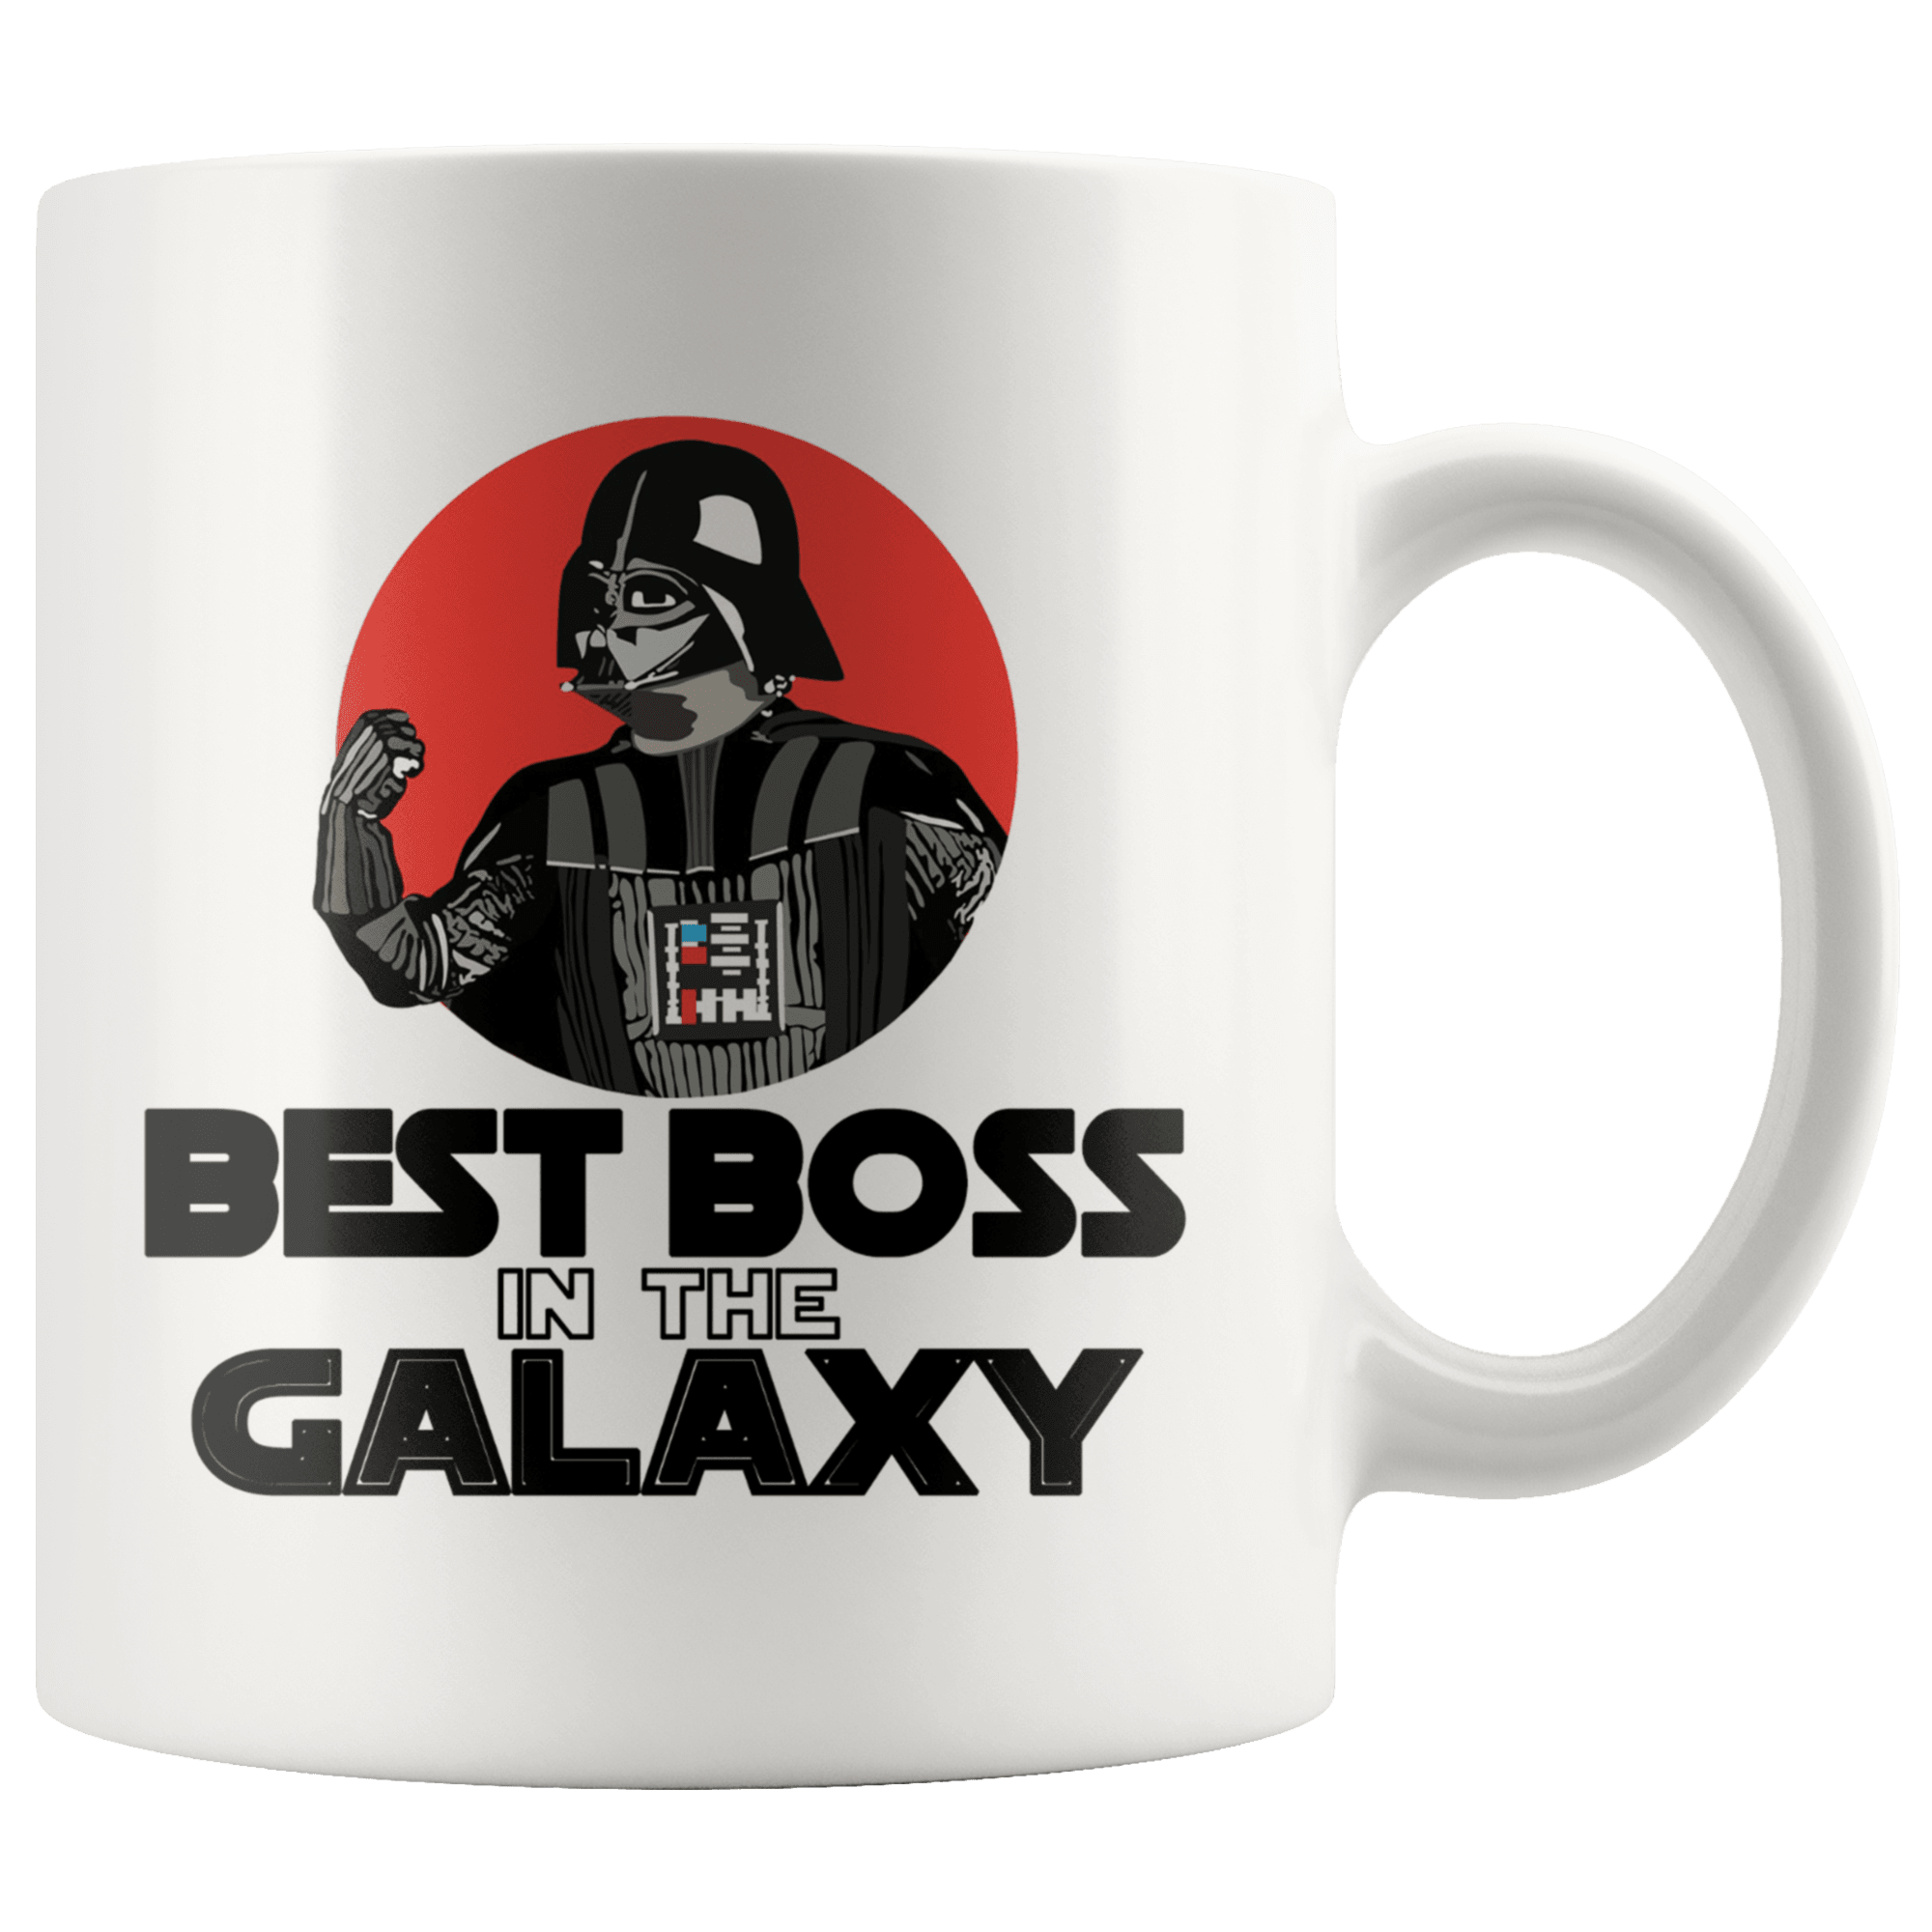 Best Boss In The Galaxy Coffee Mug - Coffee Cups Gift Idea For Men or Women Boss - SPCM